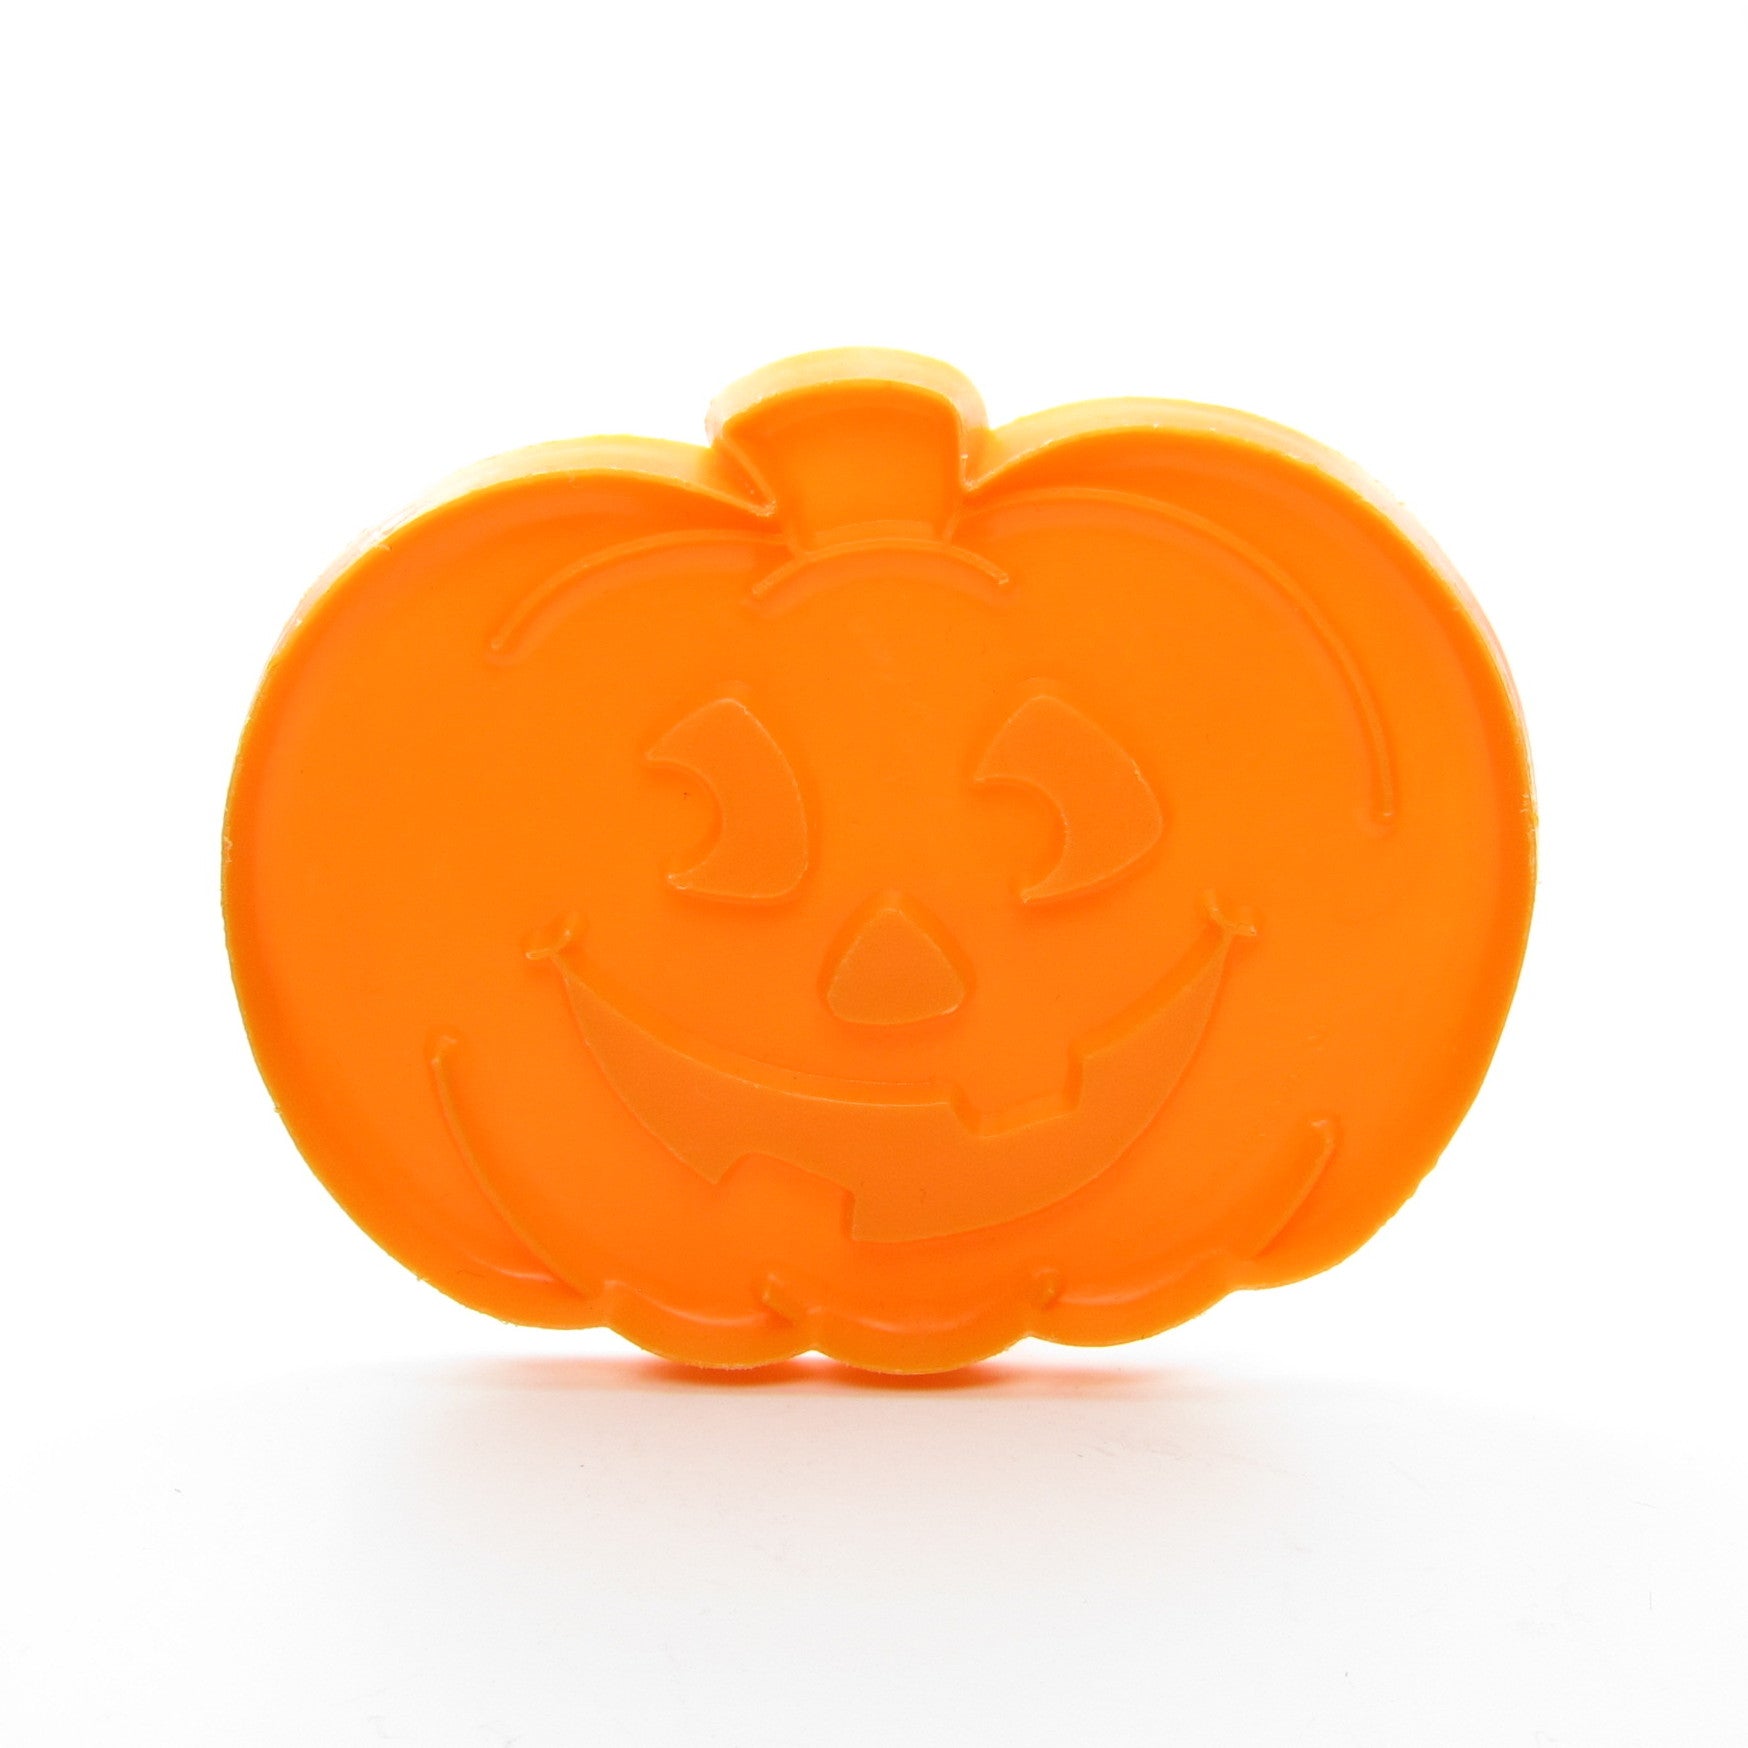 Hallmark Halloween jack-o-lantern pumpkin cookie cutter